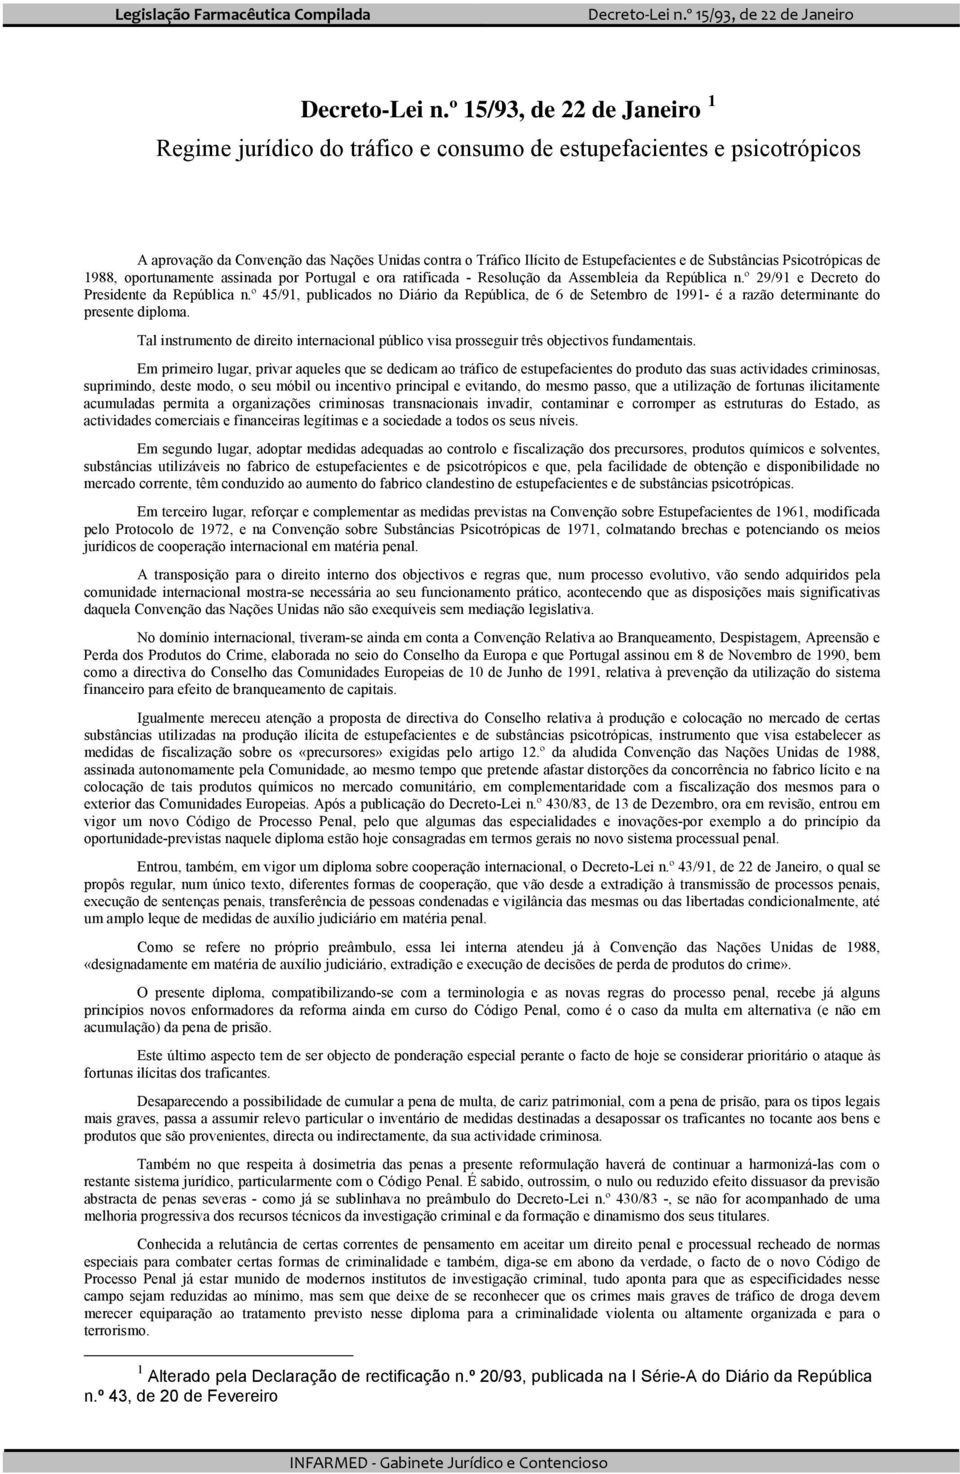 Substâncias Psicotrópicas de 1988, oportunamente assinada por Portugal e ora ratificada - Resolução da Assembleia da República n.º 29/91 e Decreto do Presidente da República n.